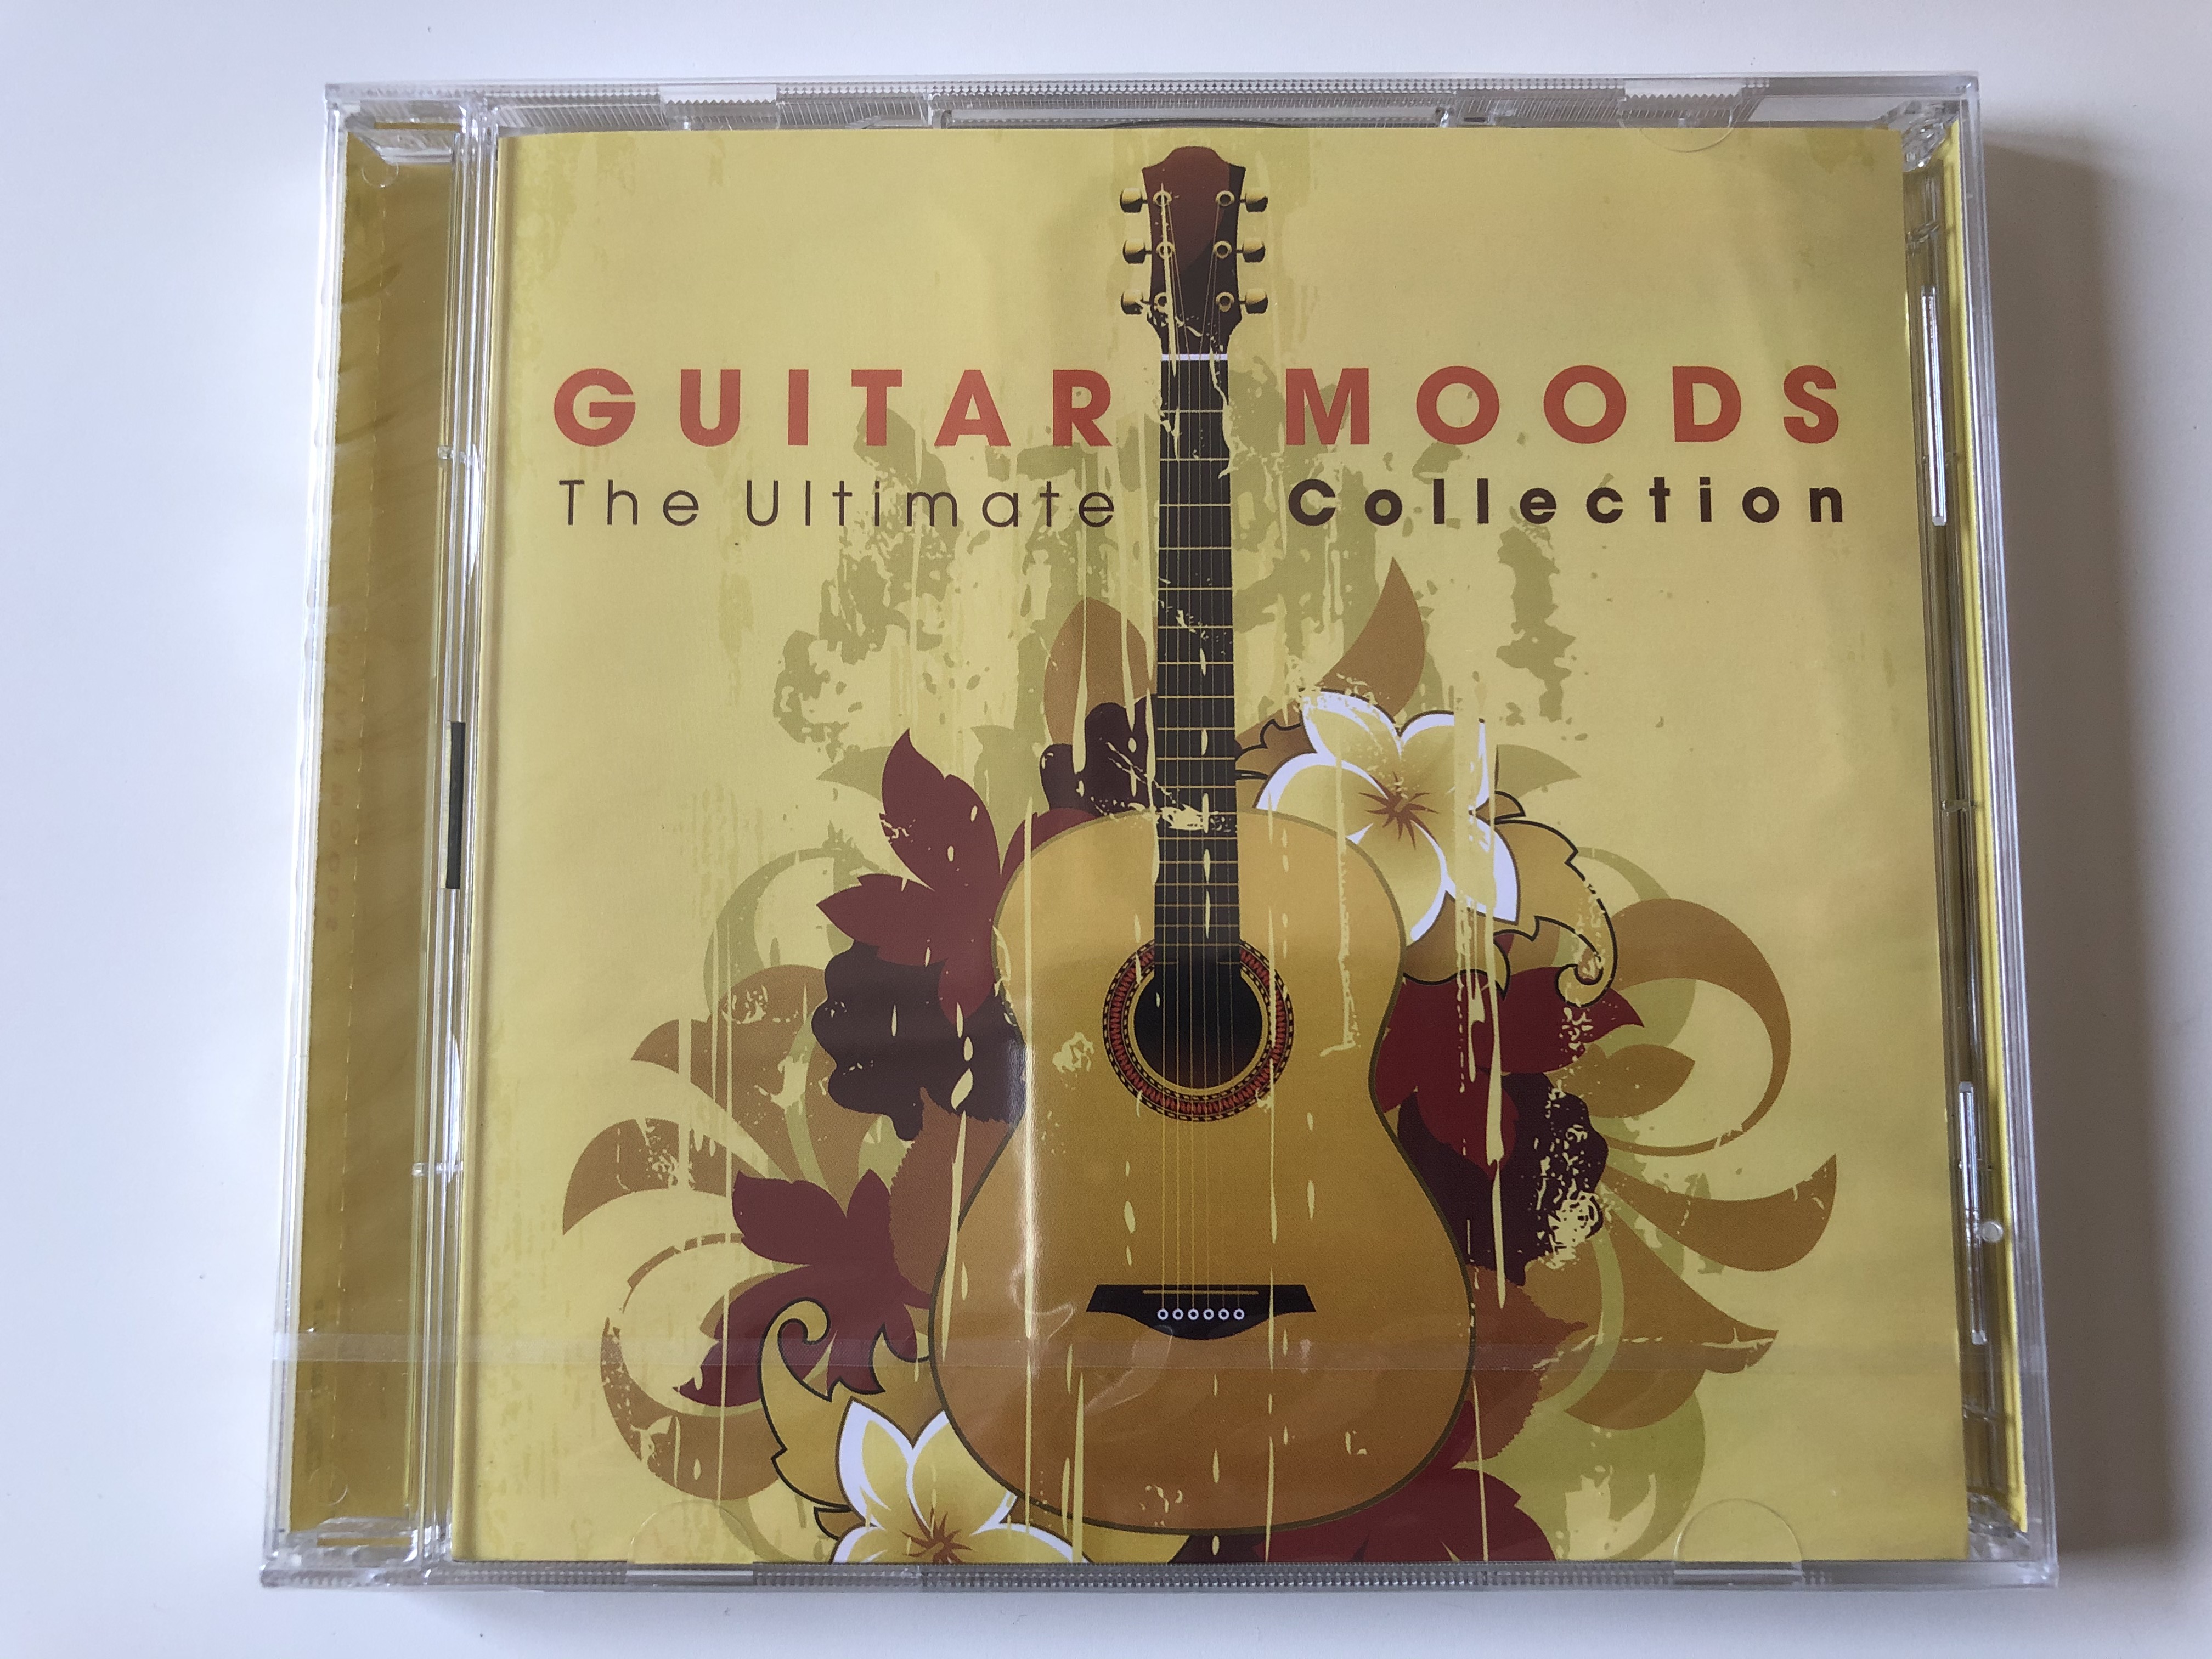 guitar-moods-the-ultimate-collection-deutsche-grammophone-audio-cd-2013-00289-479-1281-1-.jpg